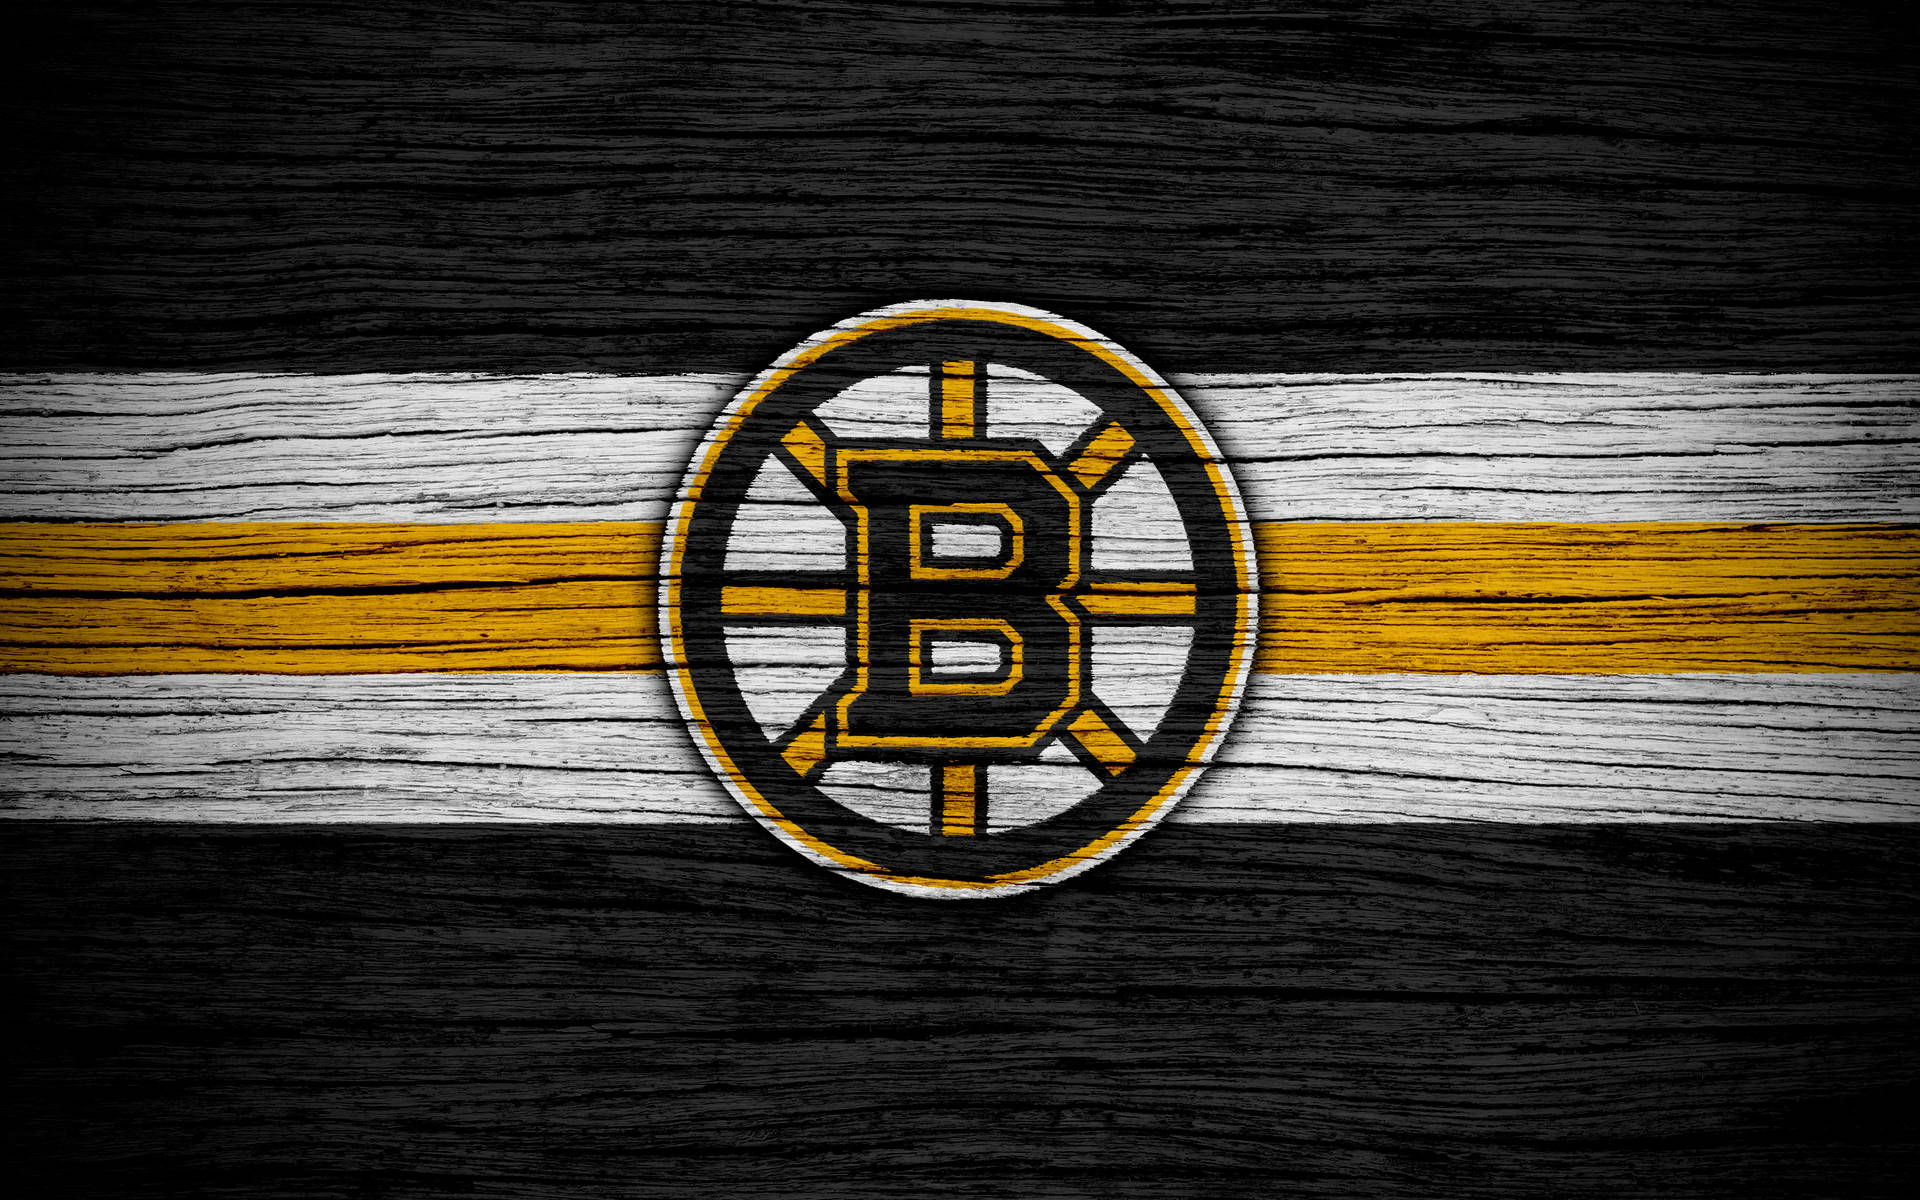 Boston Bruins Wood Grain Wallpaper